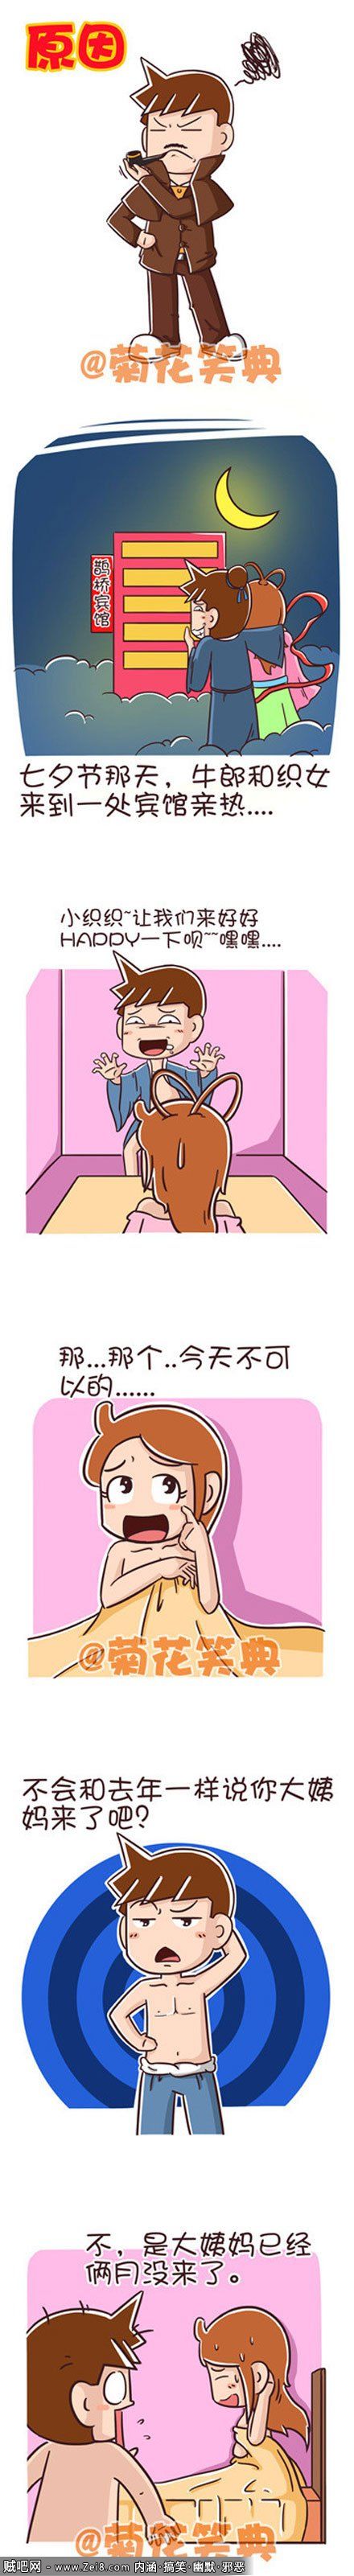 【菊花笑典邪恶漫画系列】迟到的大姨妈